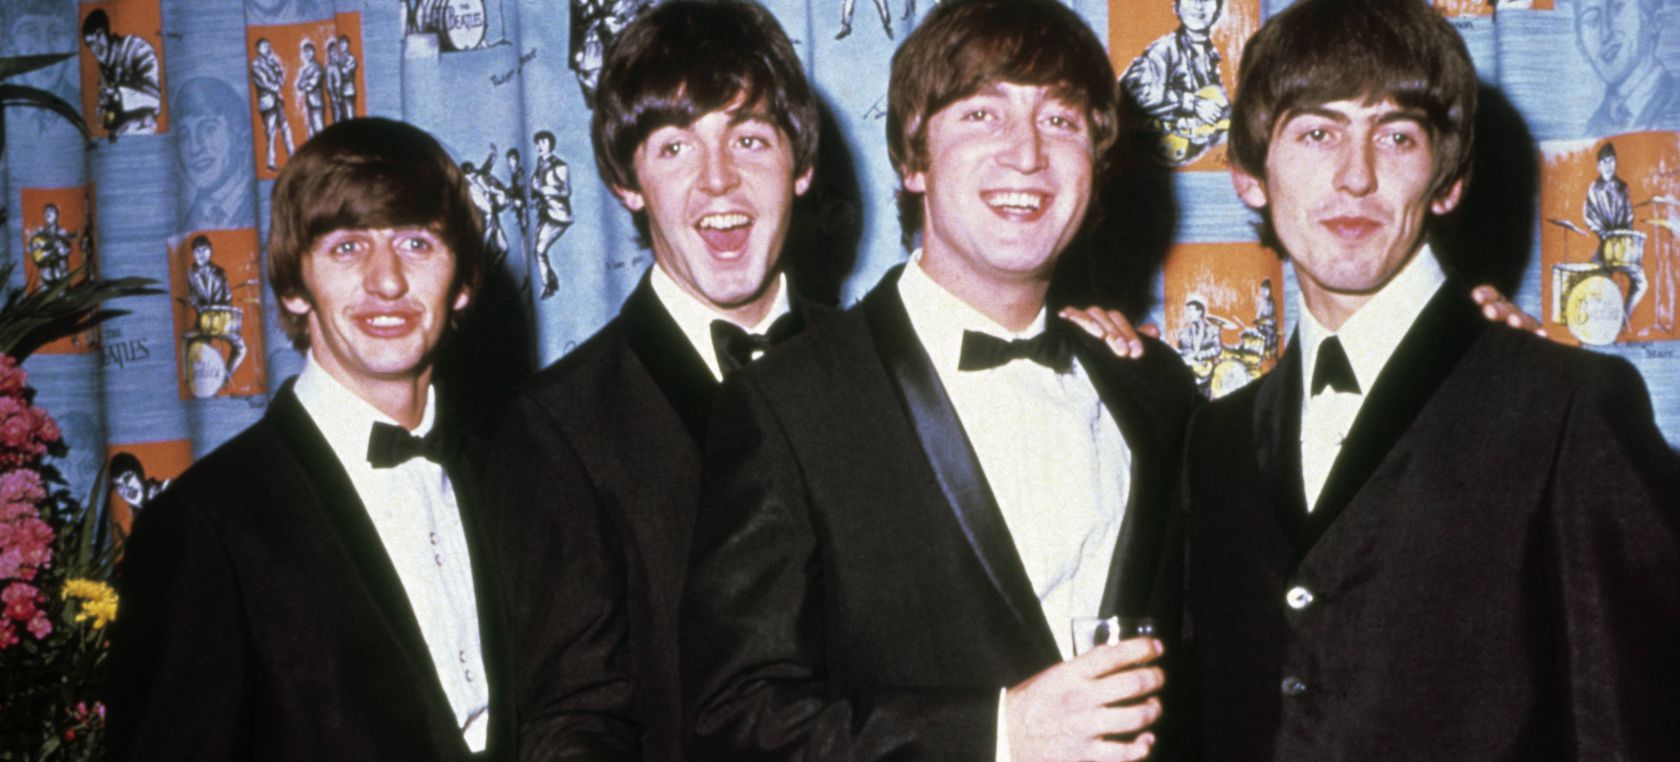 El duro día en la vida de The Beatles en el que grabaron ‘A hard day’s night’